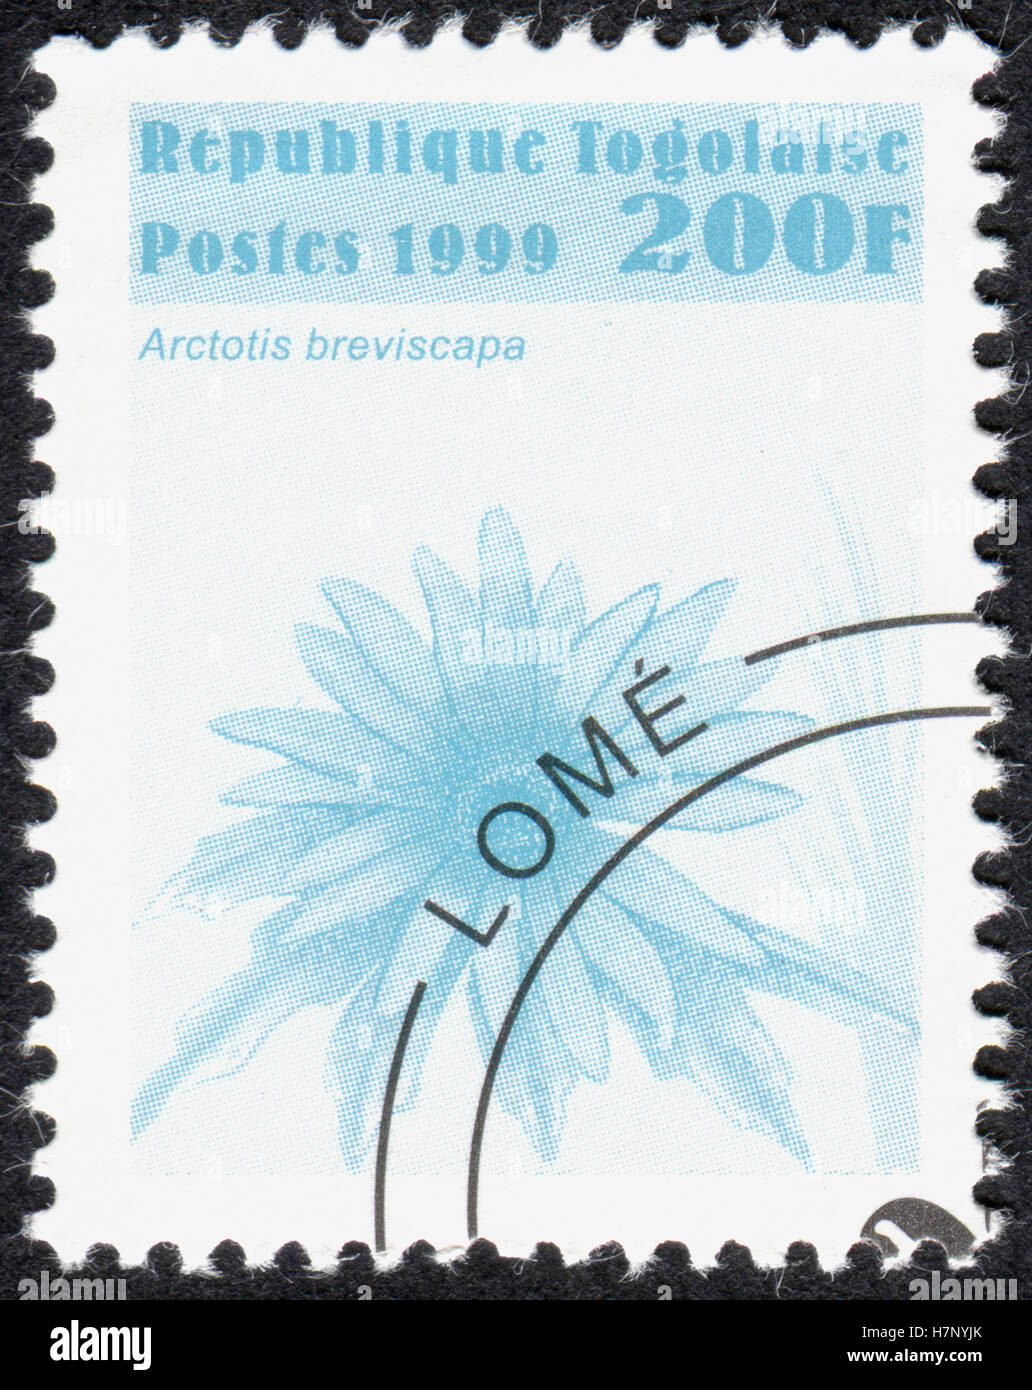 TOGO - CIRCA 1999: Eine Briefmarke gedruckt in Togo, zeigt eine Pflanze Arctotis Breviscapa circa 1999 Stockfoto